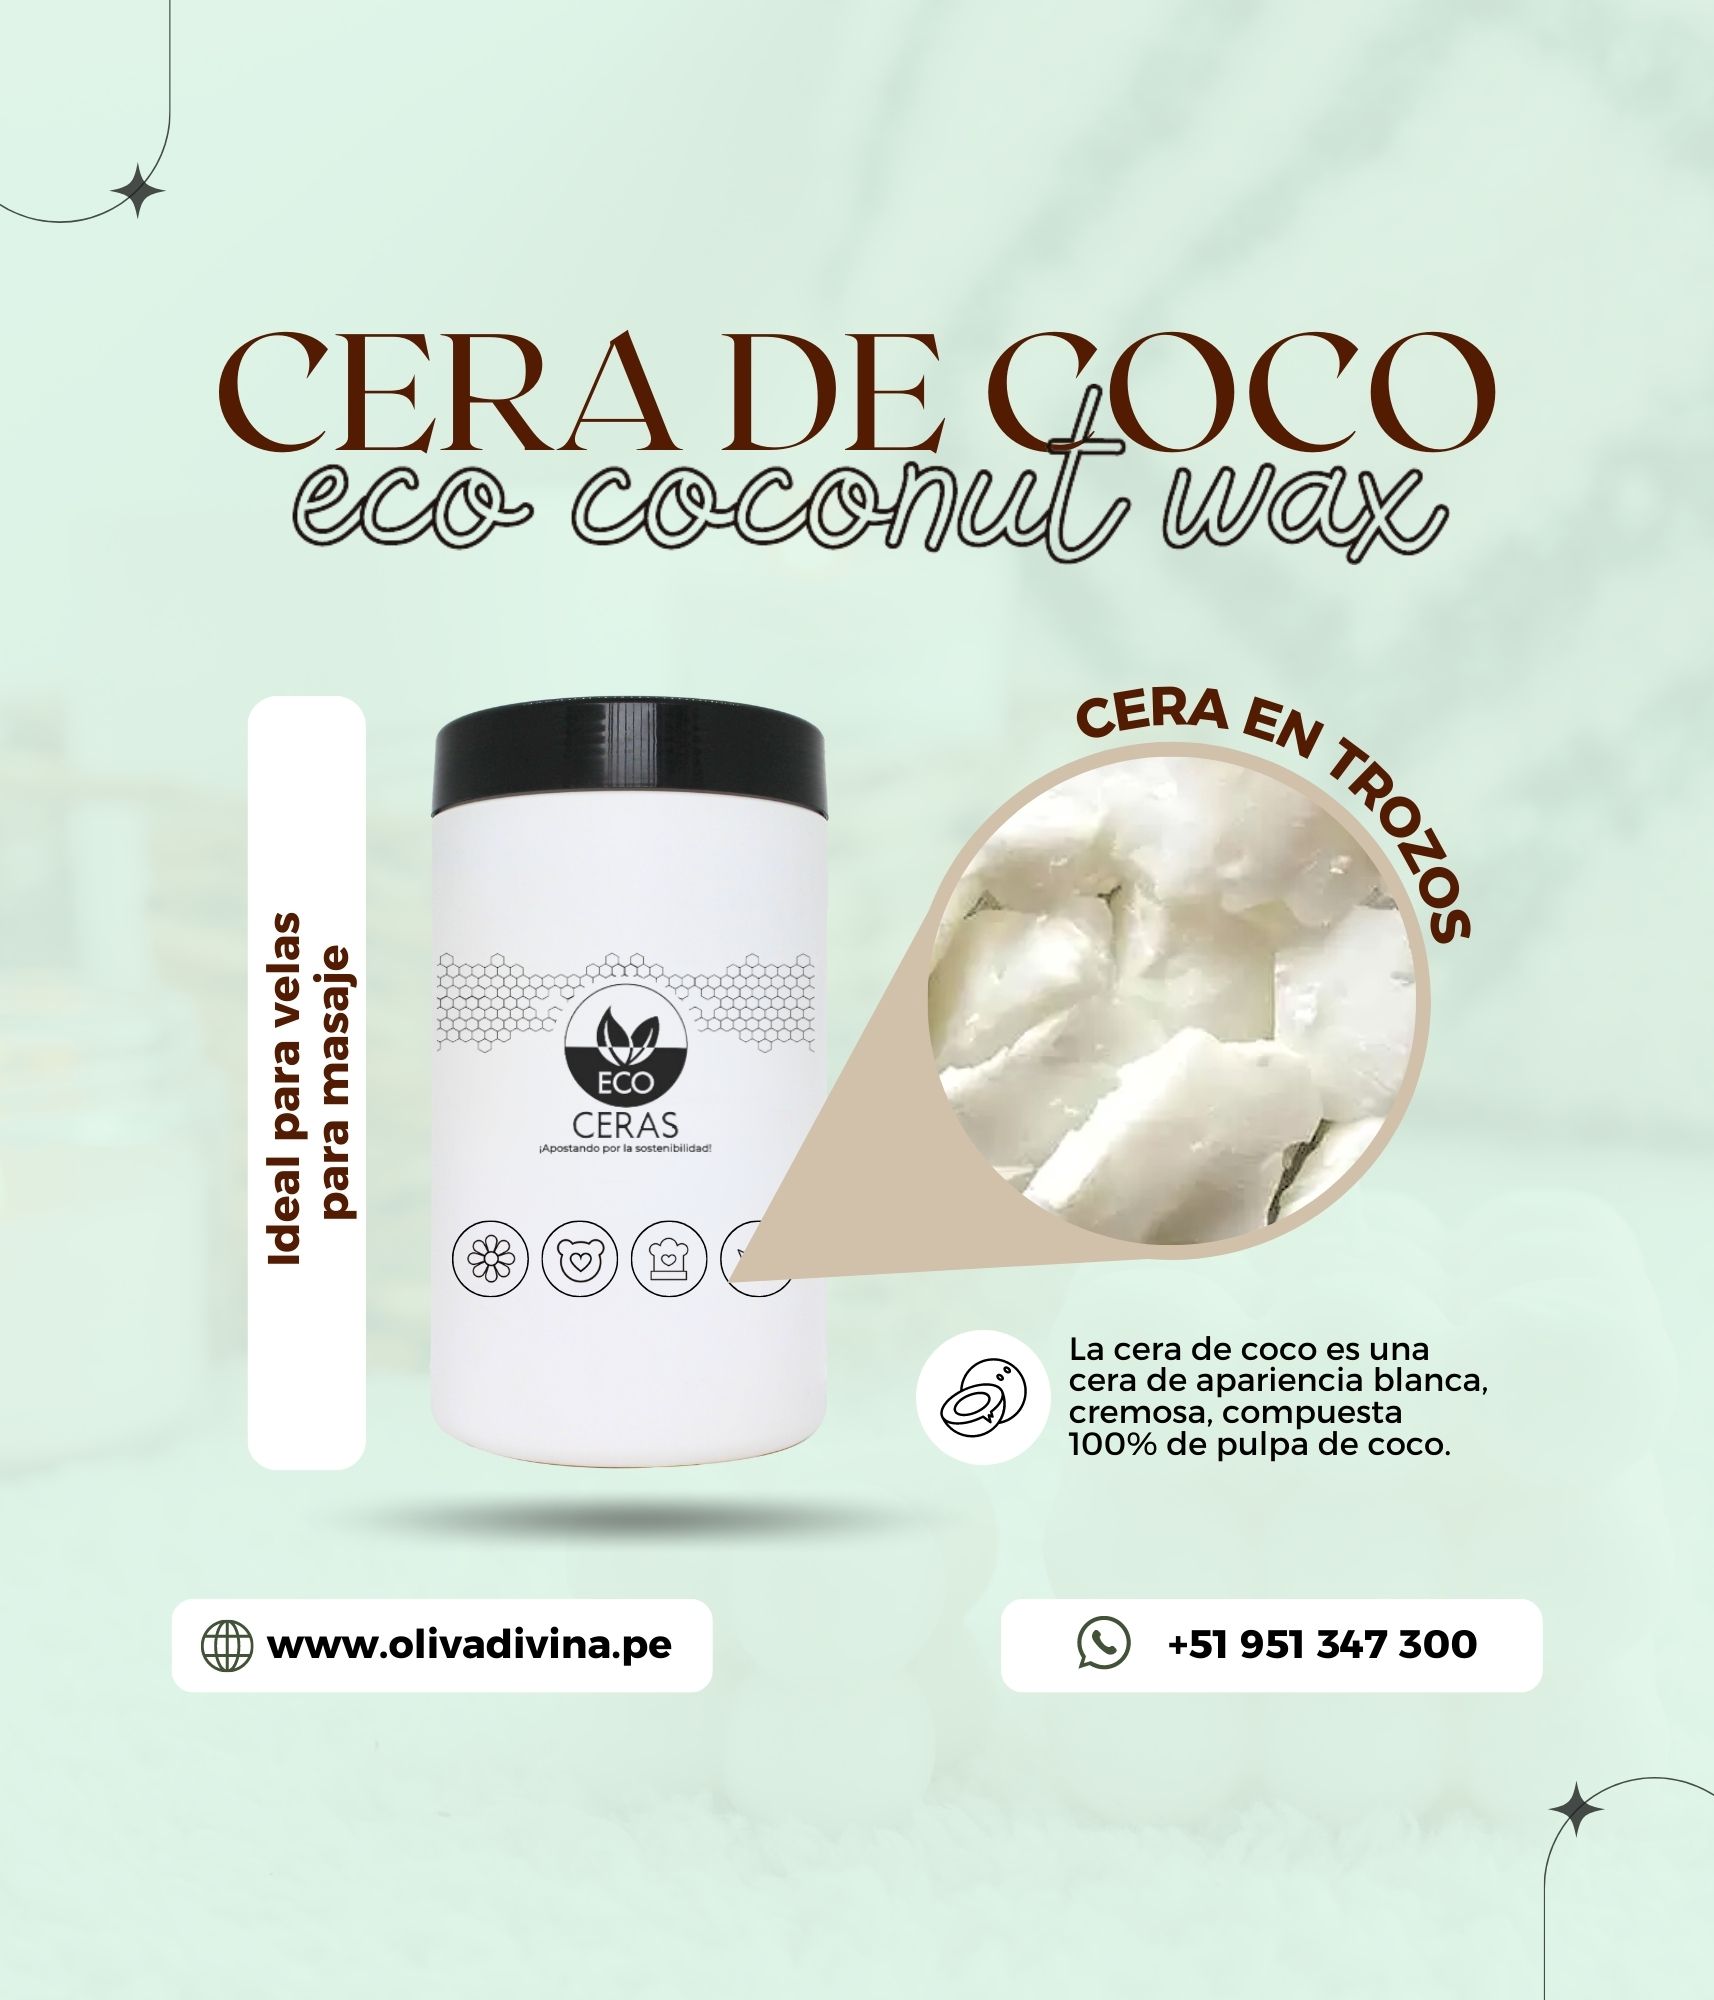 Cera de Coco - Coconut Wax